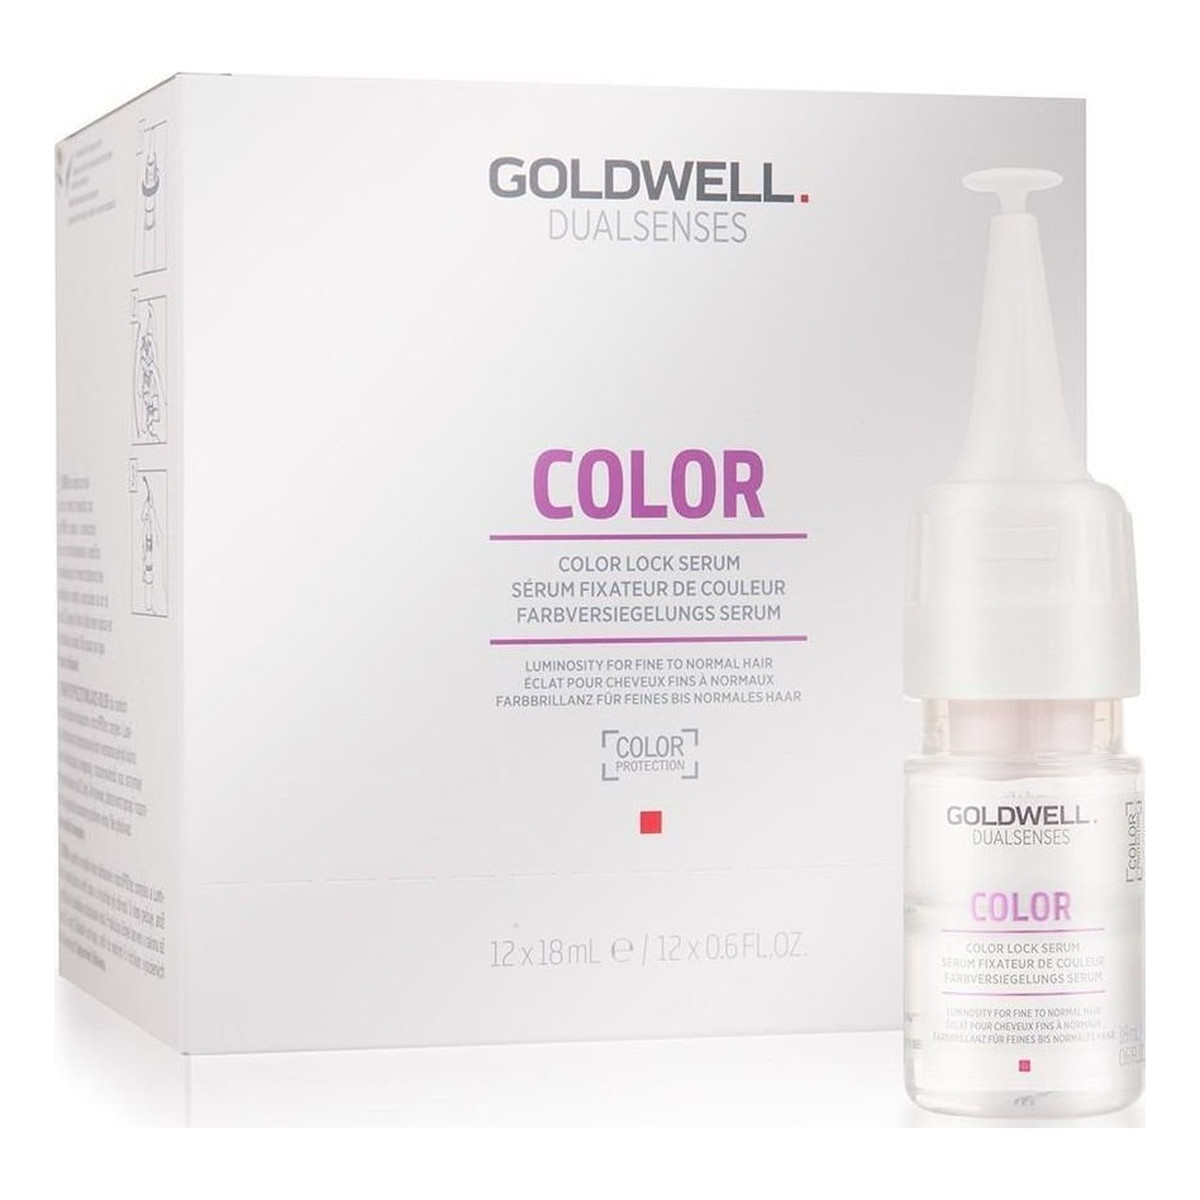 Goldwell Dualsenses Color Intensive Conditioning Serum utrwalające kolor dla włosów normalnych i cienkich 12x18ml 216ml